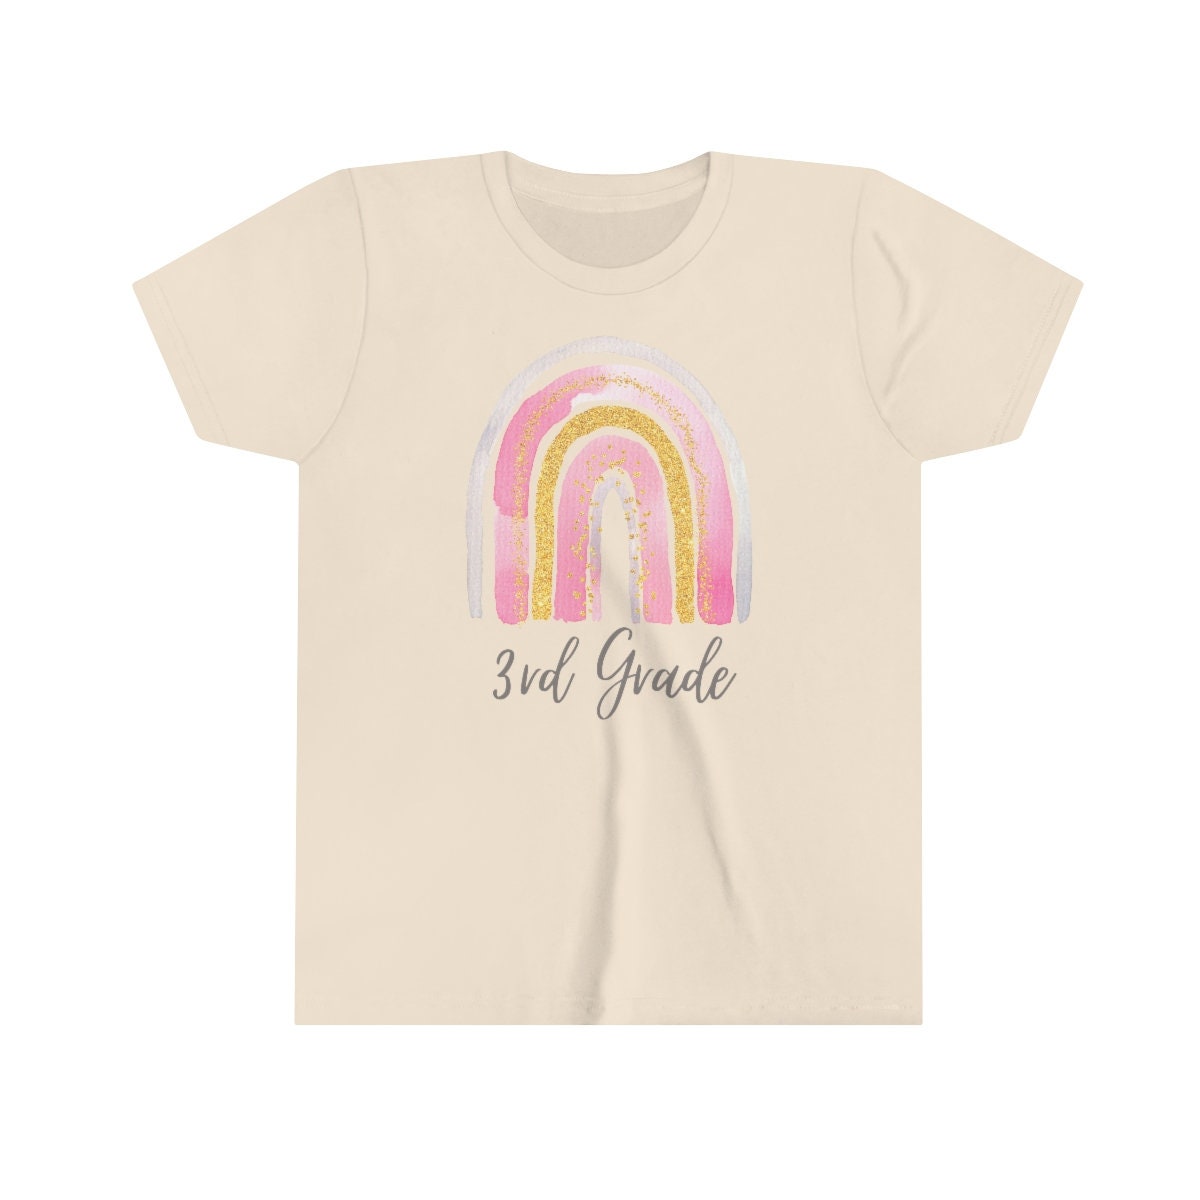 Third Grade Pink Rainbow t-shirt - 3rd grade tee shirt, third grade t-shirt, rainbow tee shirt, cute back to school shirt, cute school shirt